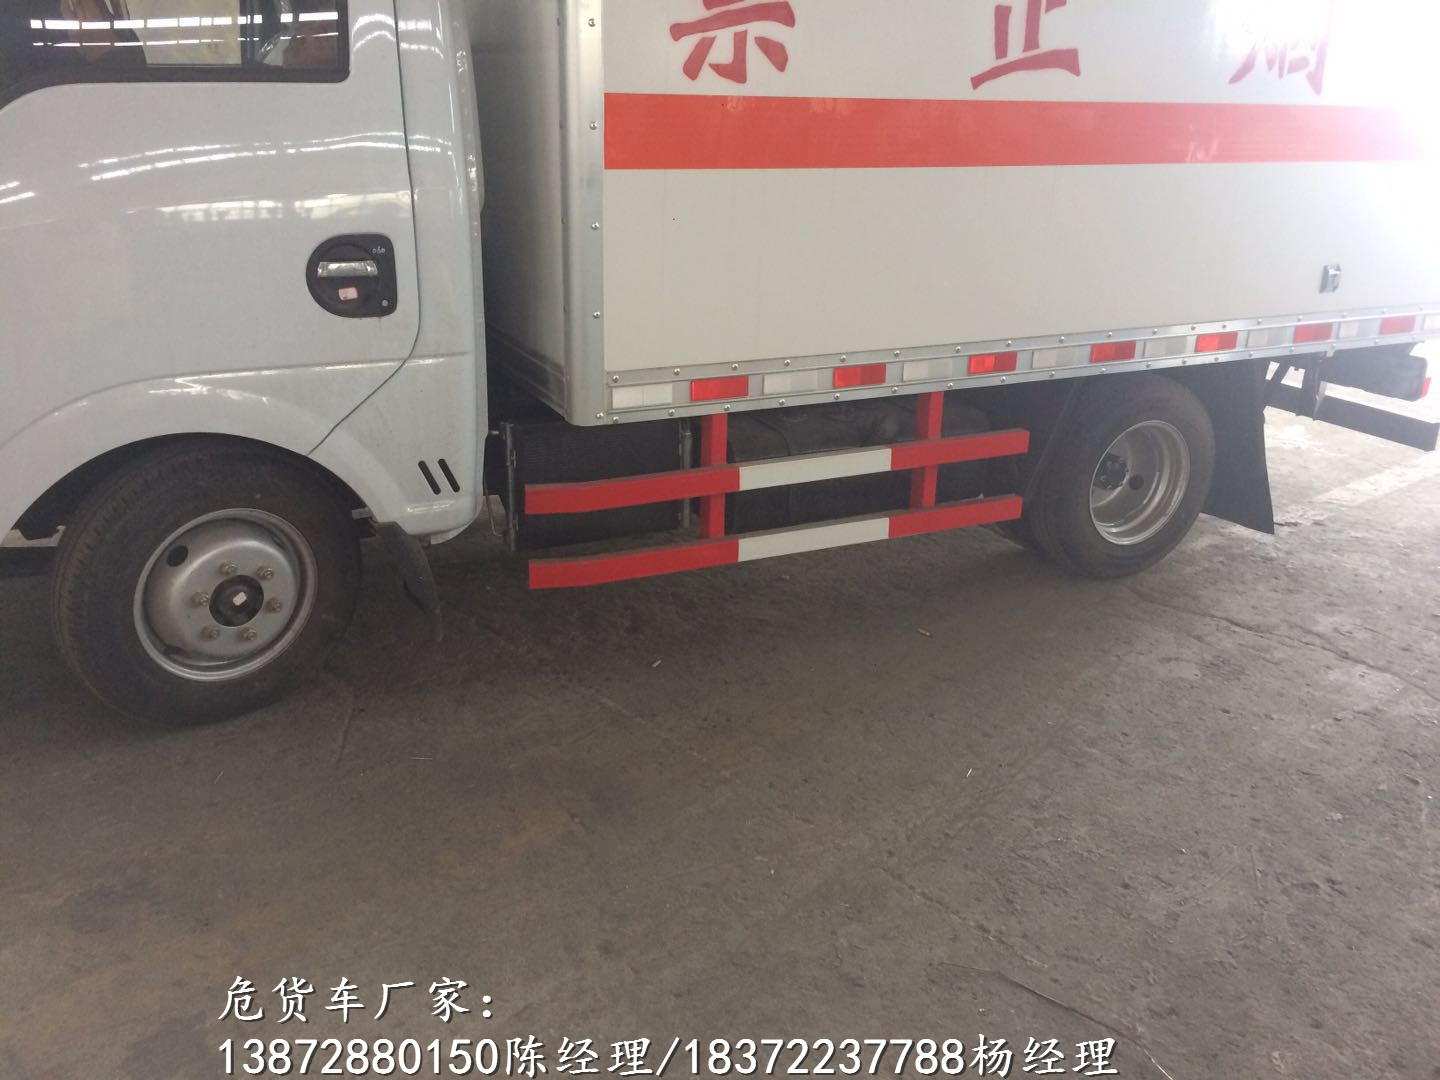 潮州东风10吨腐蚀品运输车具体配置危险品车